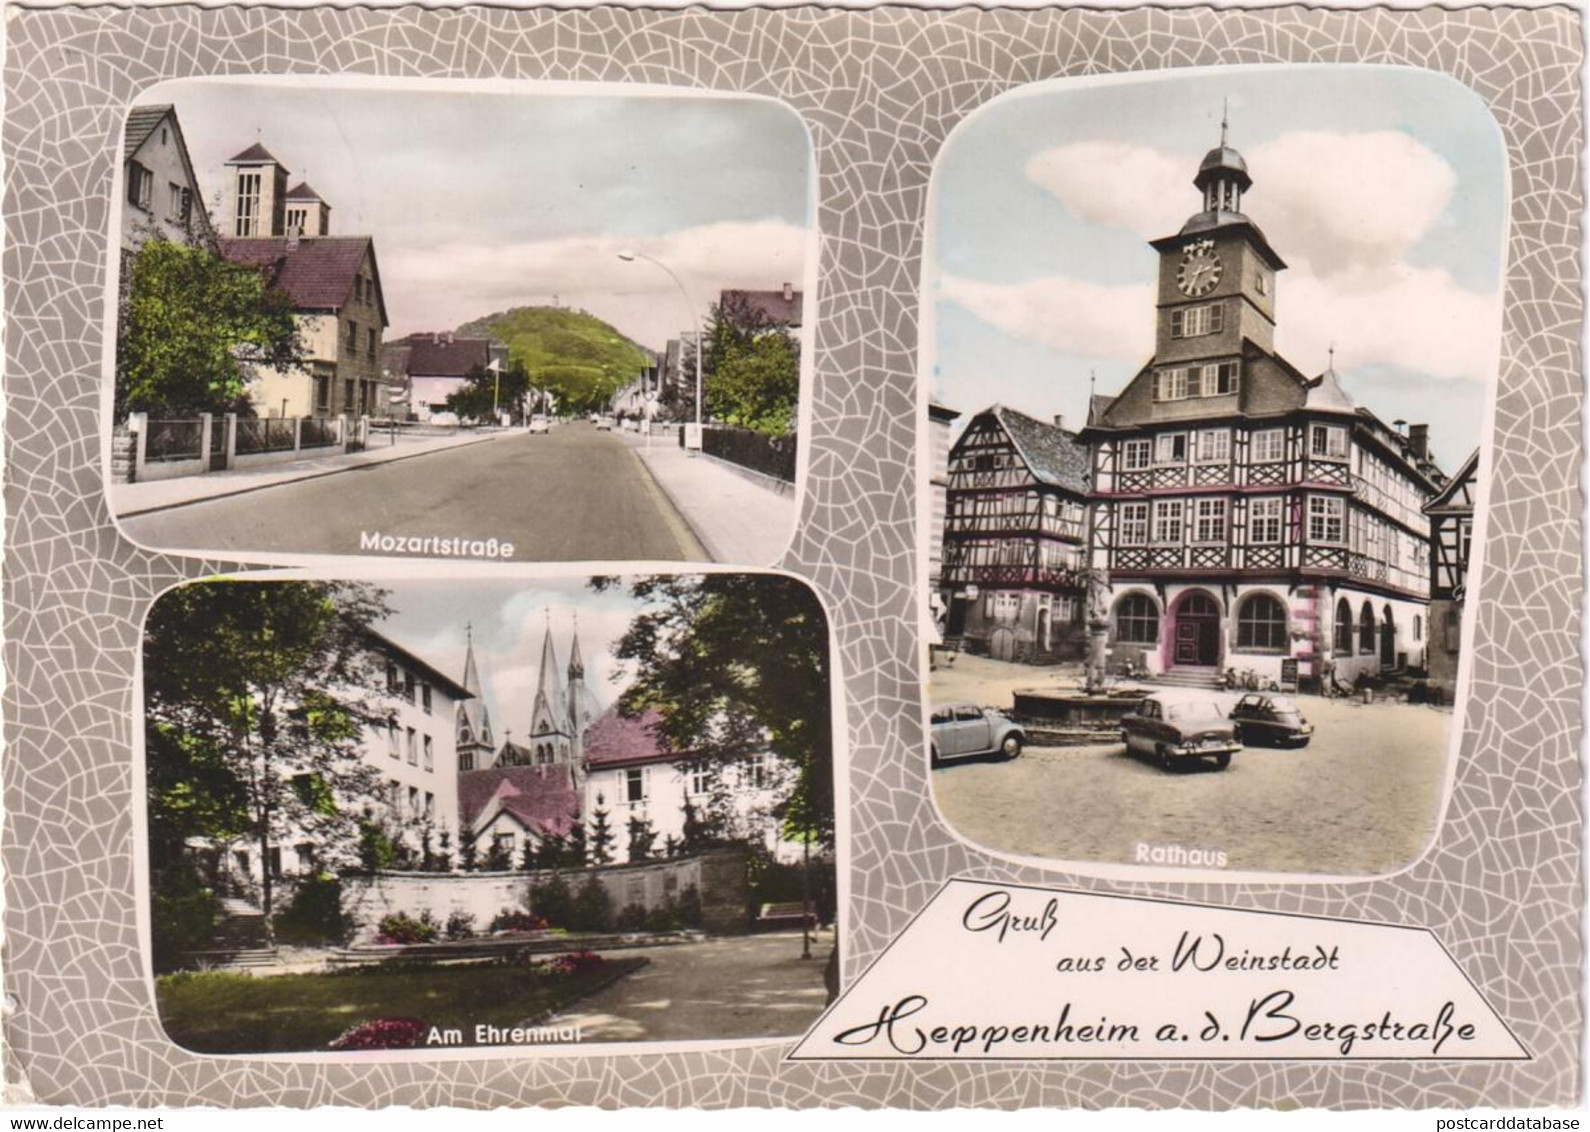 Gruss Aus Der Weinstadt Heppenheim A. D. Bergstrasse - & Old Cars - Heppenheim